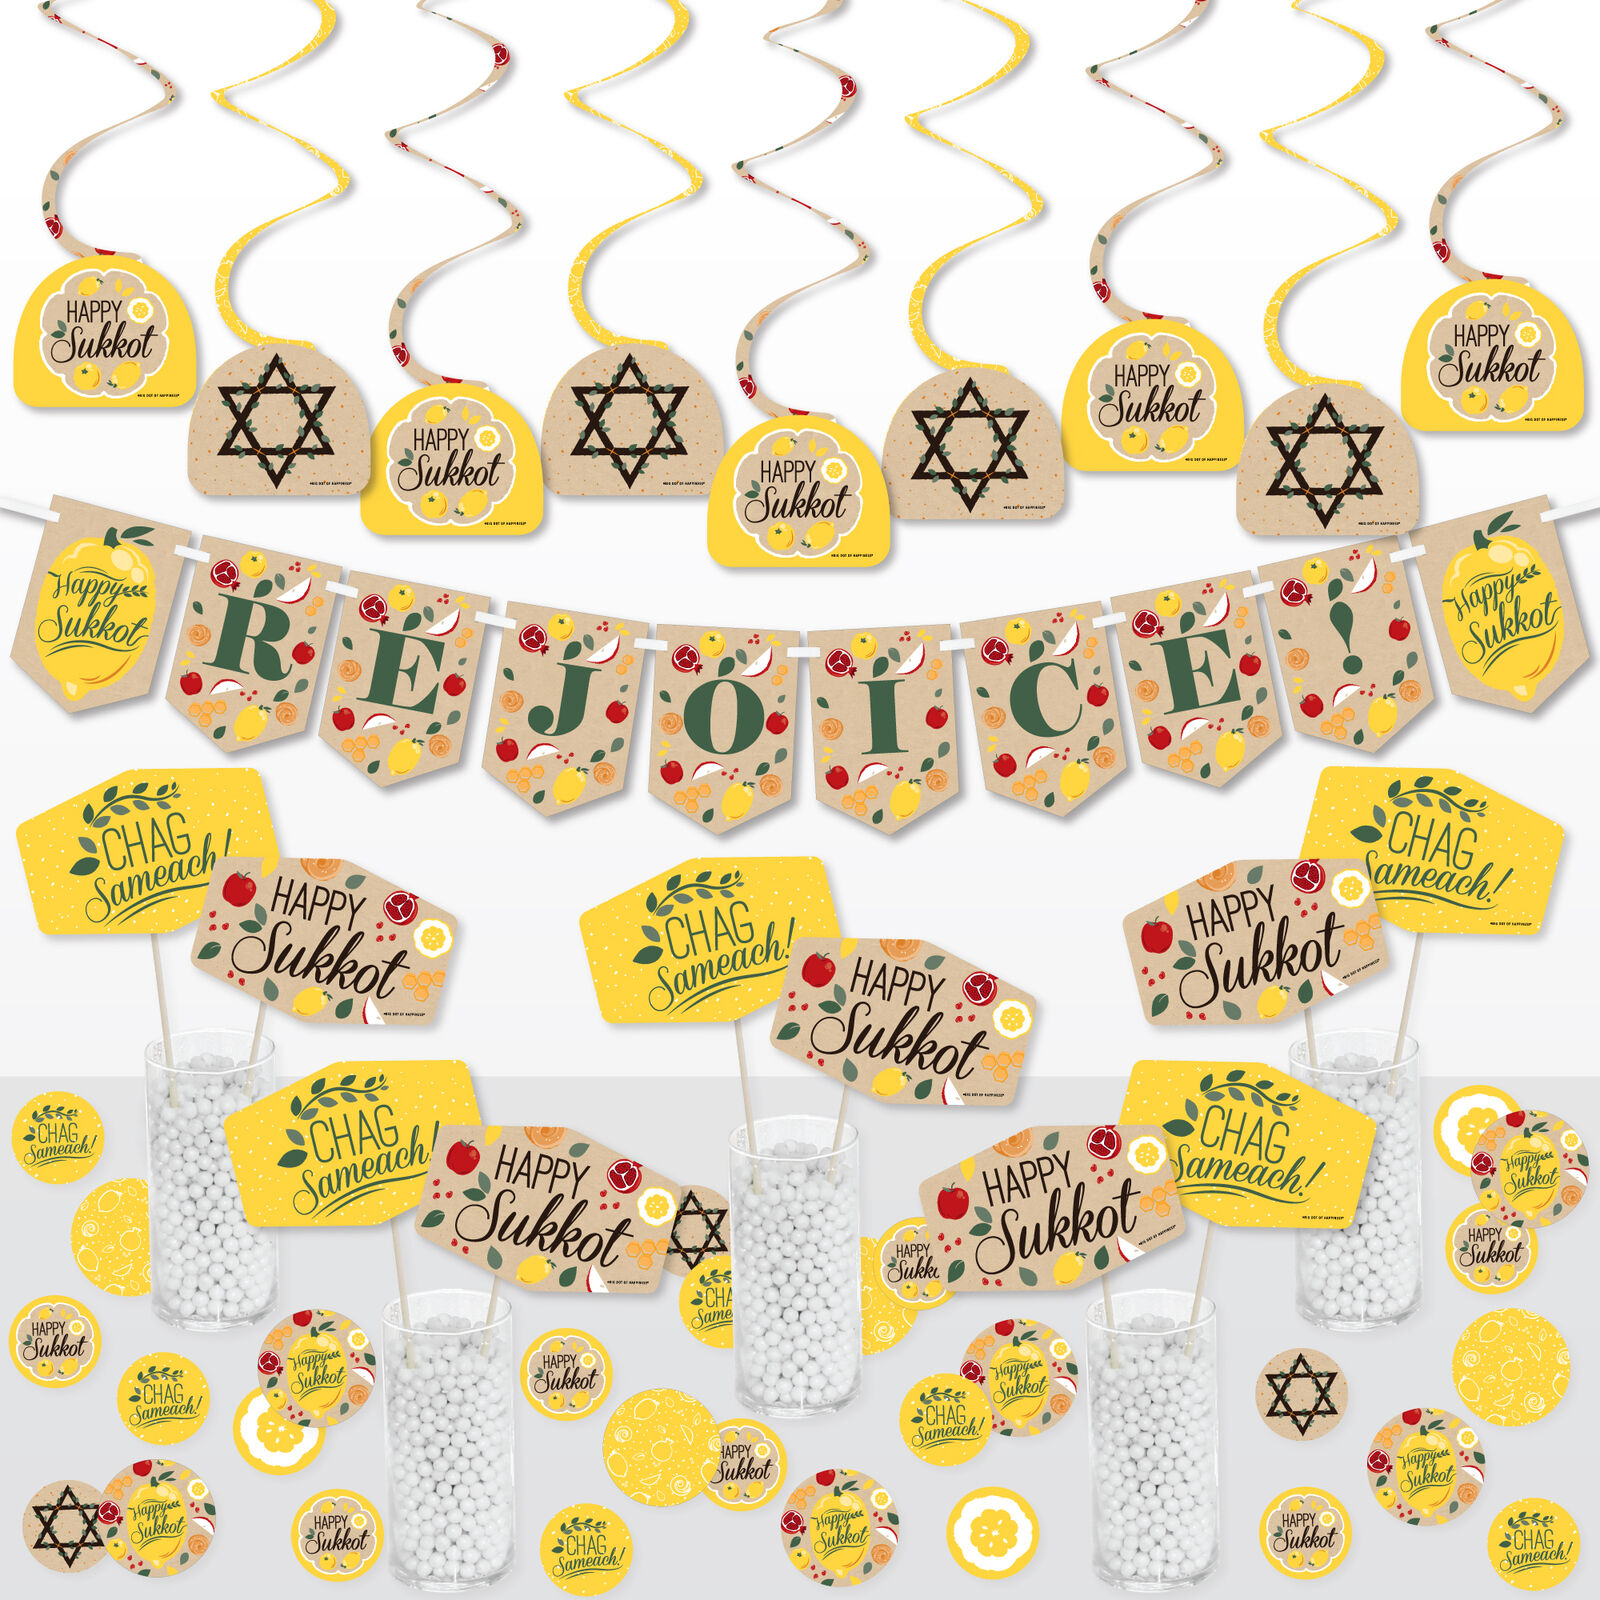 Sukkot - Sukkah  Holiday Supplies Decoration Kit - Decor Galore Party Pack 51 Pc